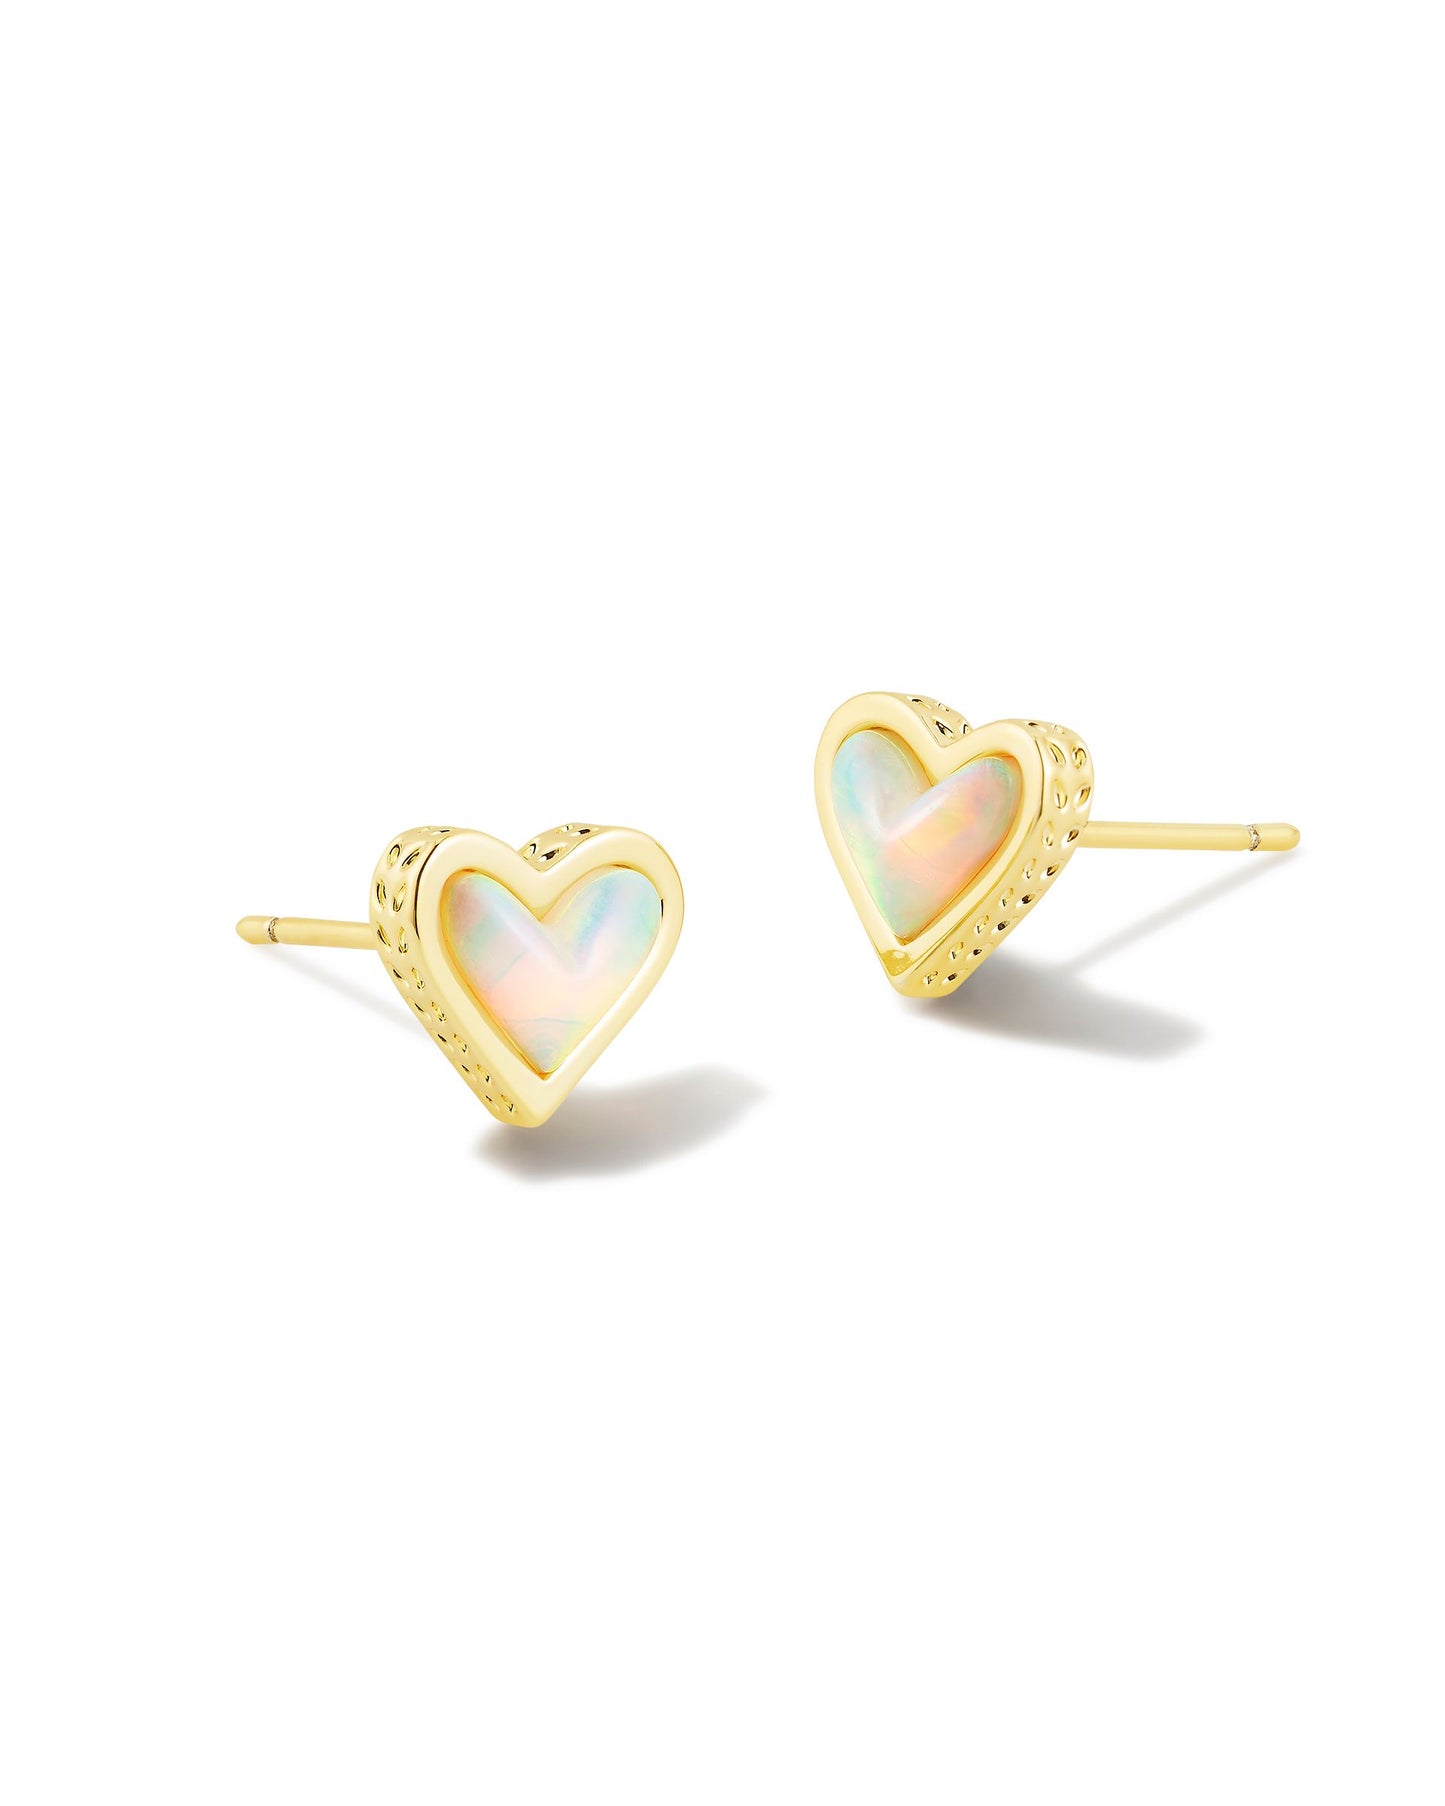 Framed Ari Heart Stud Earrings | Gold White Opalescent Resin